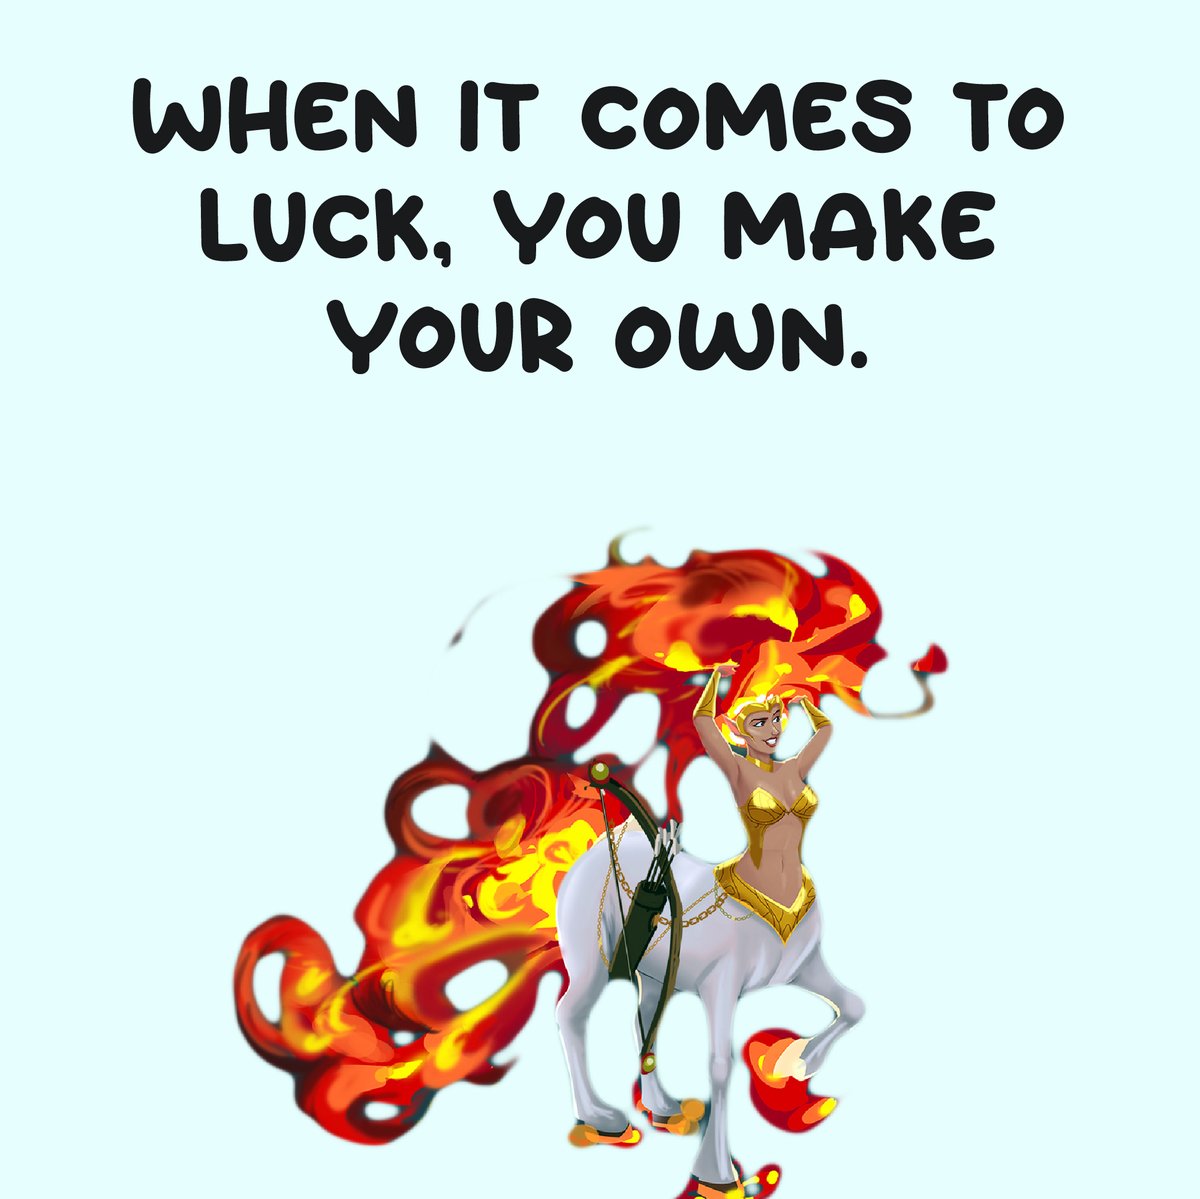 We make our own luck!
#luck #makeyourluck #ownluck #makeyourown